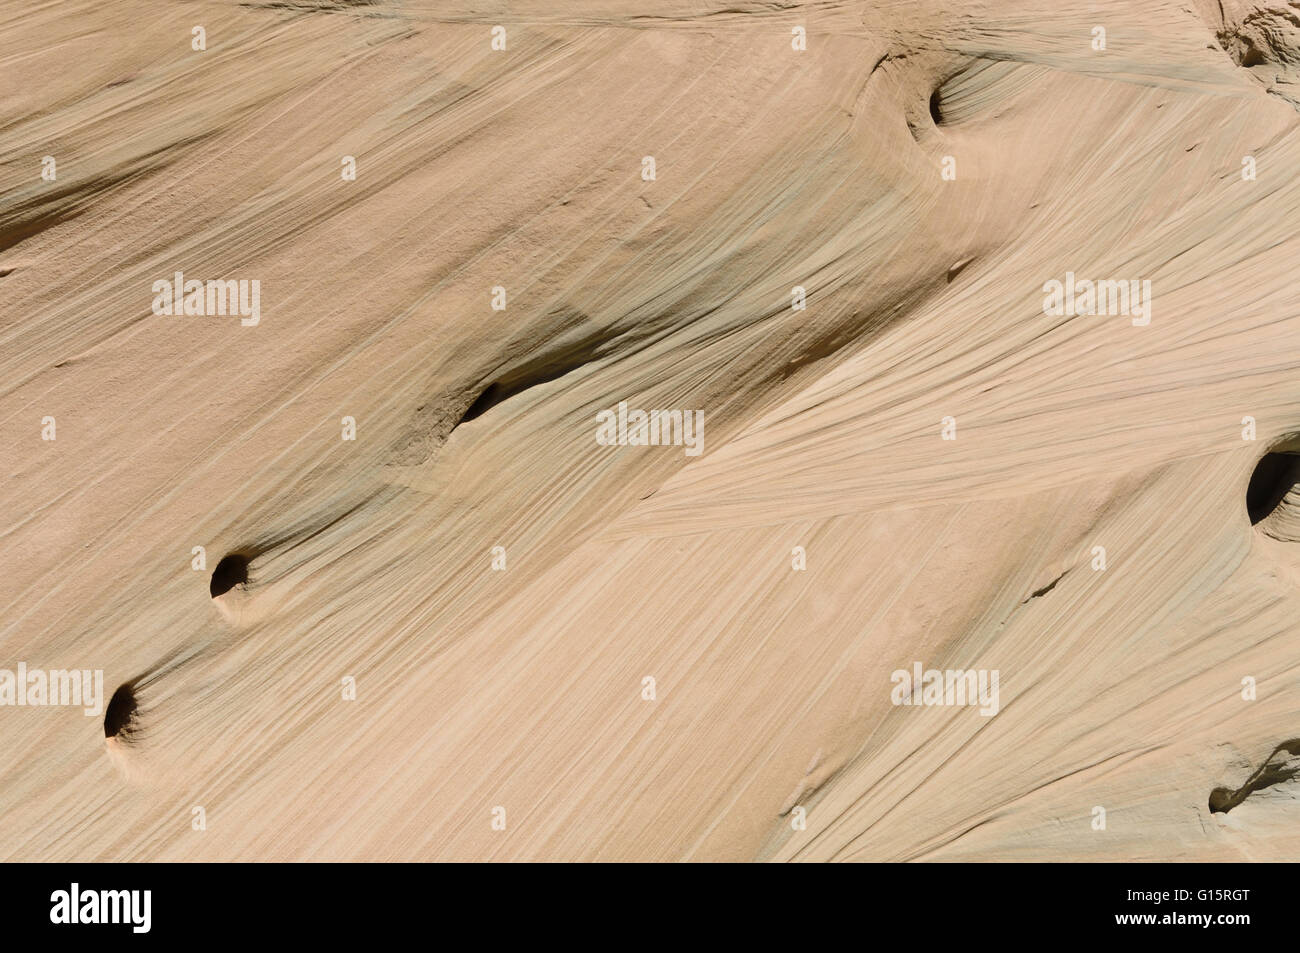 Dettaglio della formazione di roccia nel deserto UT Foto Stock